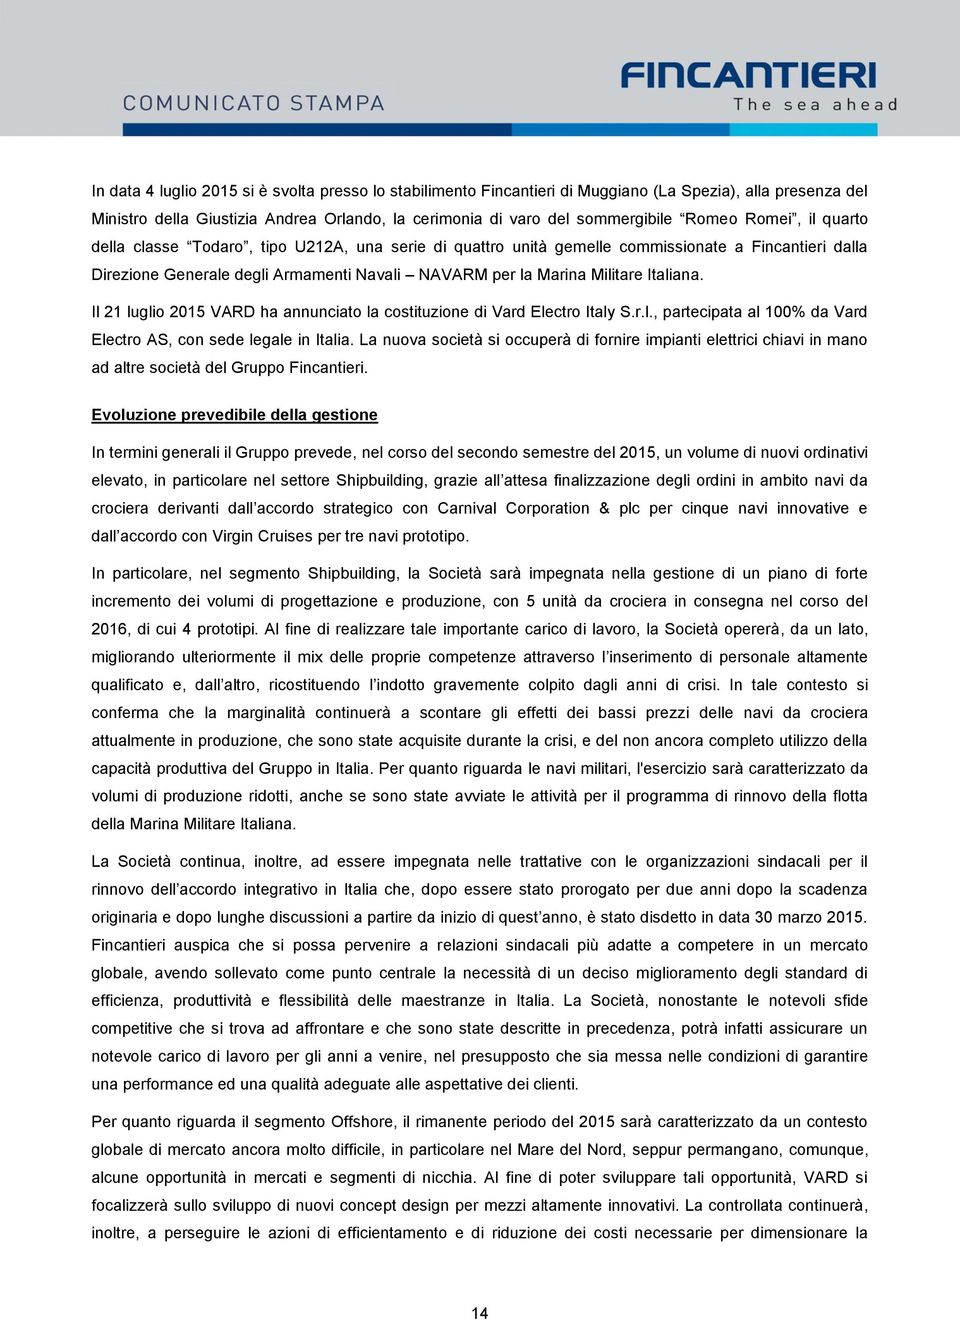 Il 21 luglio 2015 VARD ha annunciato la costituzione di Vard Electro Italy S.r.l., partecipata al 100% da Vard Electro AS, con sede legale in Italia.